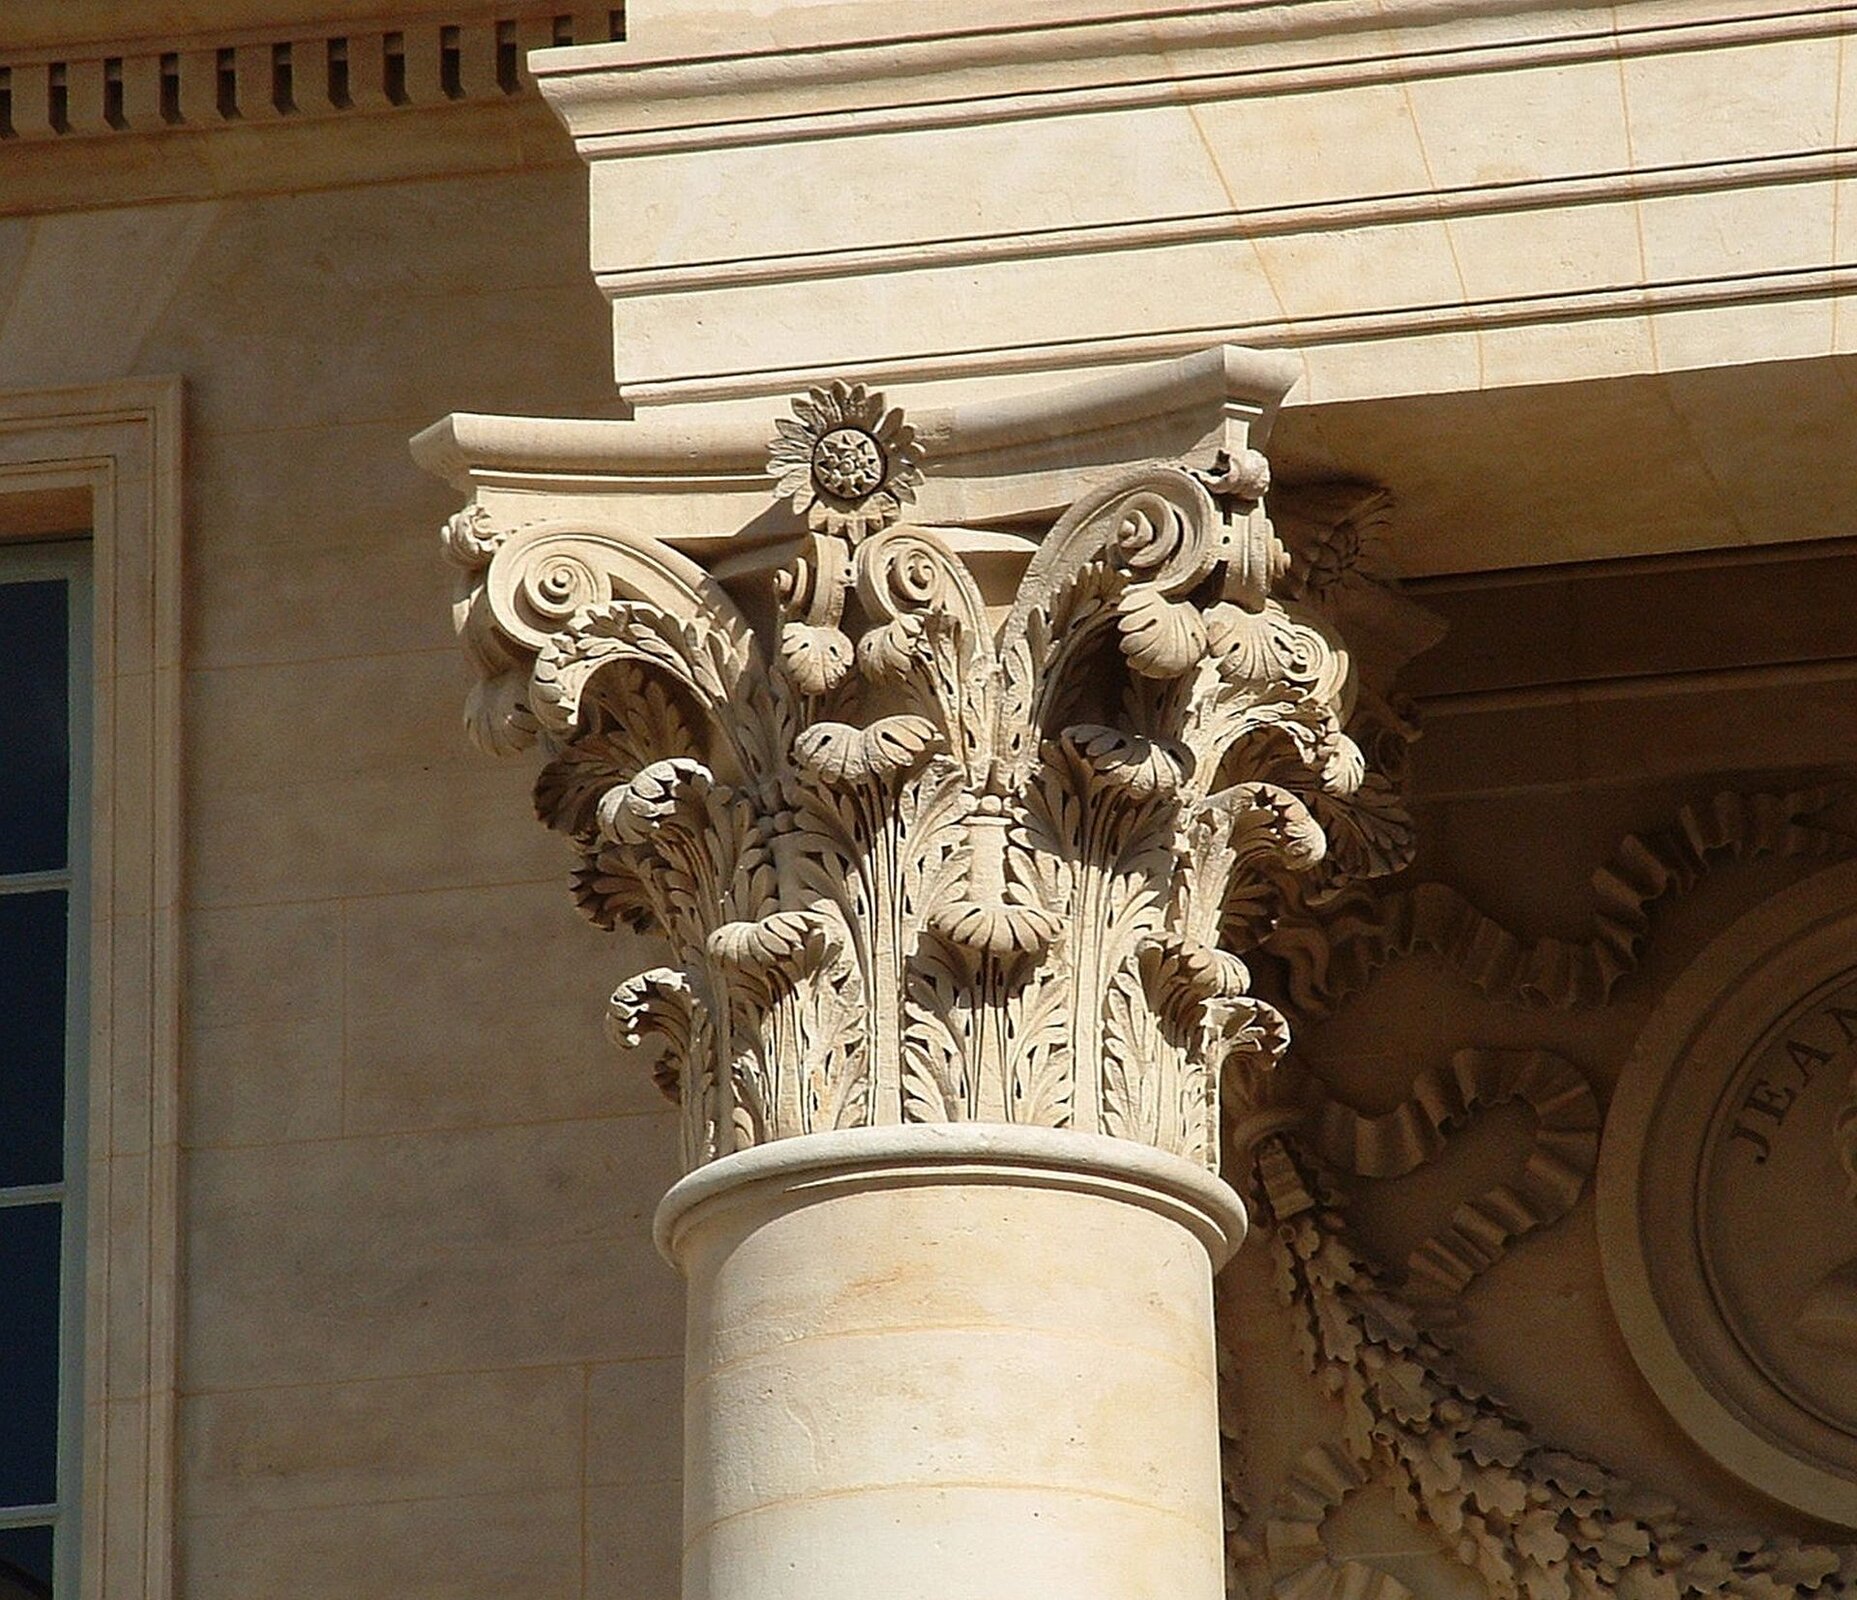 Ilustracja przedstawia zdjęcie kapitelu kolumny w stylu korynckim. Głowica dekorowana jest zwiniętymi liśćmi akantu. Nad głowicą znajduje się fragment gzymsu, a w tle widoczna jest ściana z fragmentem okna. Po prawej stronie znajduje się dekoracja z liści dębu z pomarszczoną wstęgą.